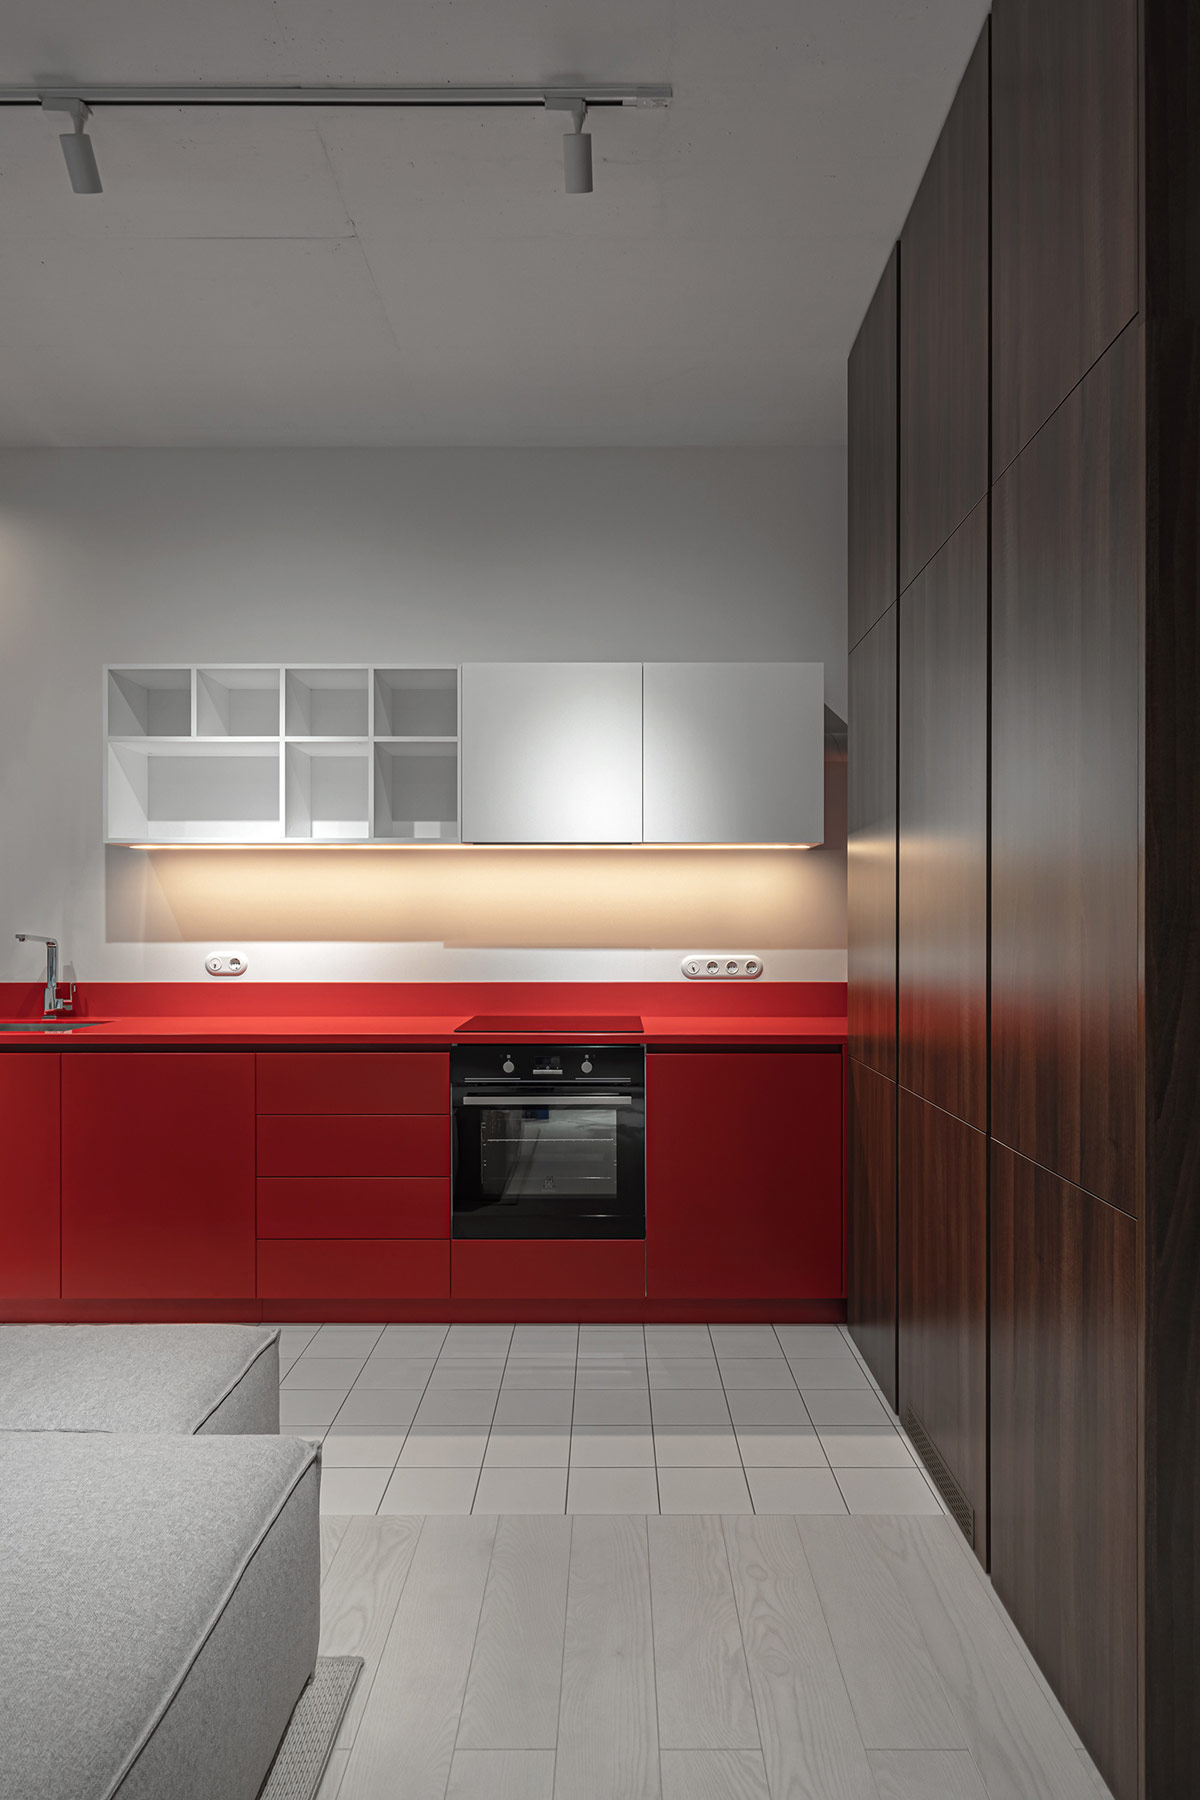 Kiến trúc sư khéo léo bố trí tủ bếp trên màu trắng, giúp cân bằng với hệ tủ dưới màu đỏ, đảm bảo tính thẩm mỹ tổng thể.